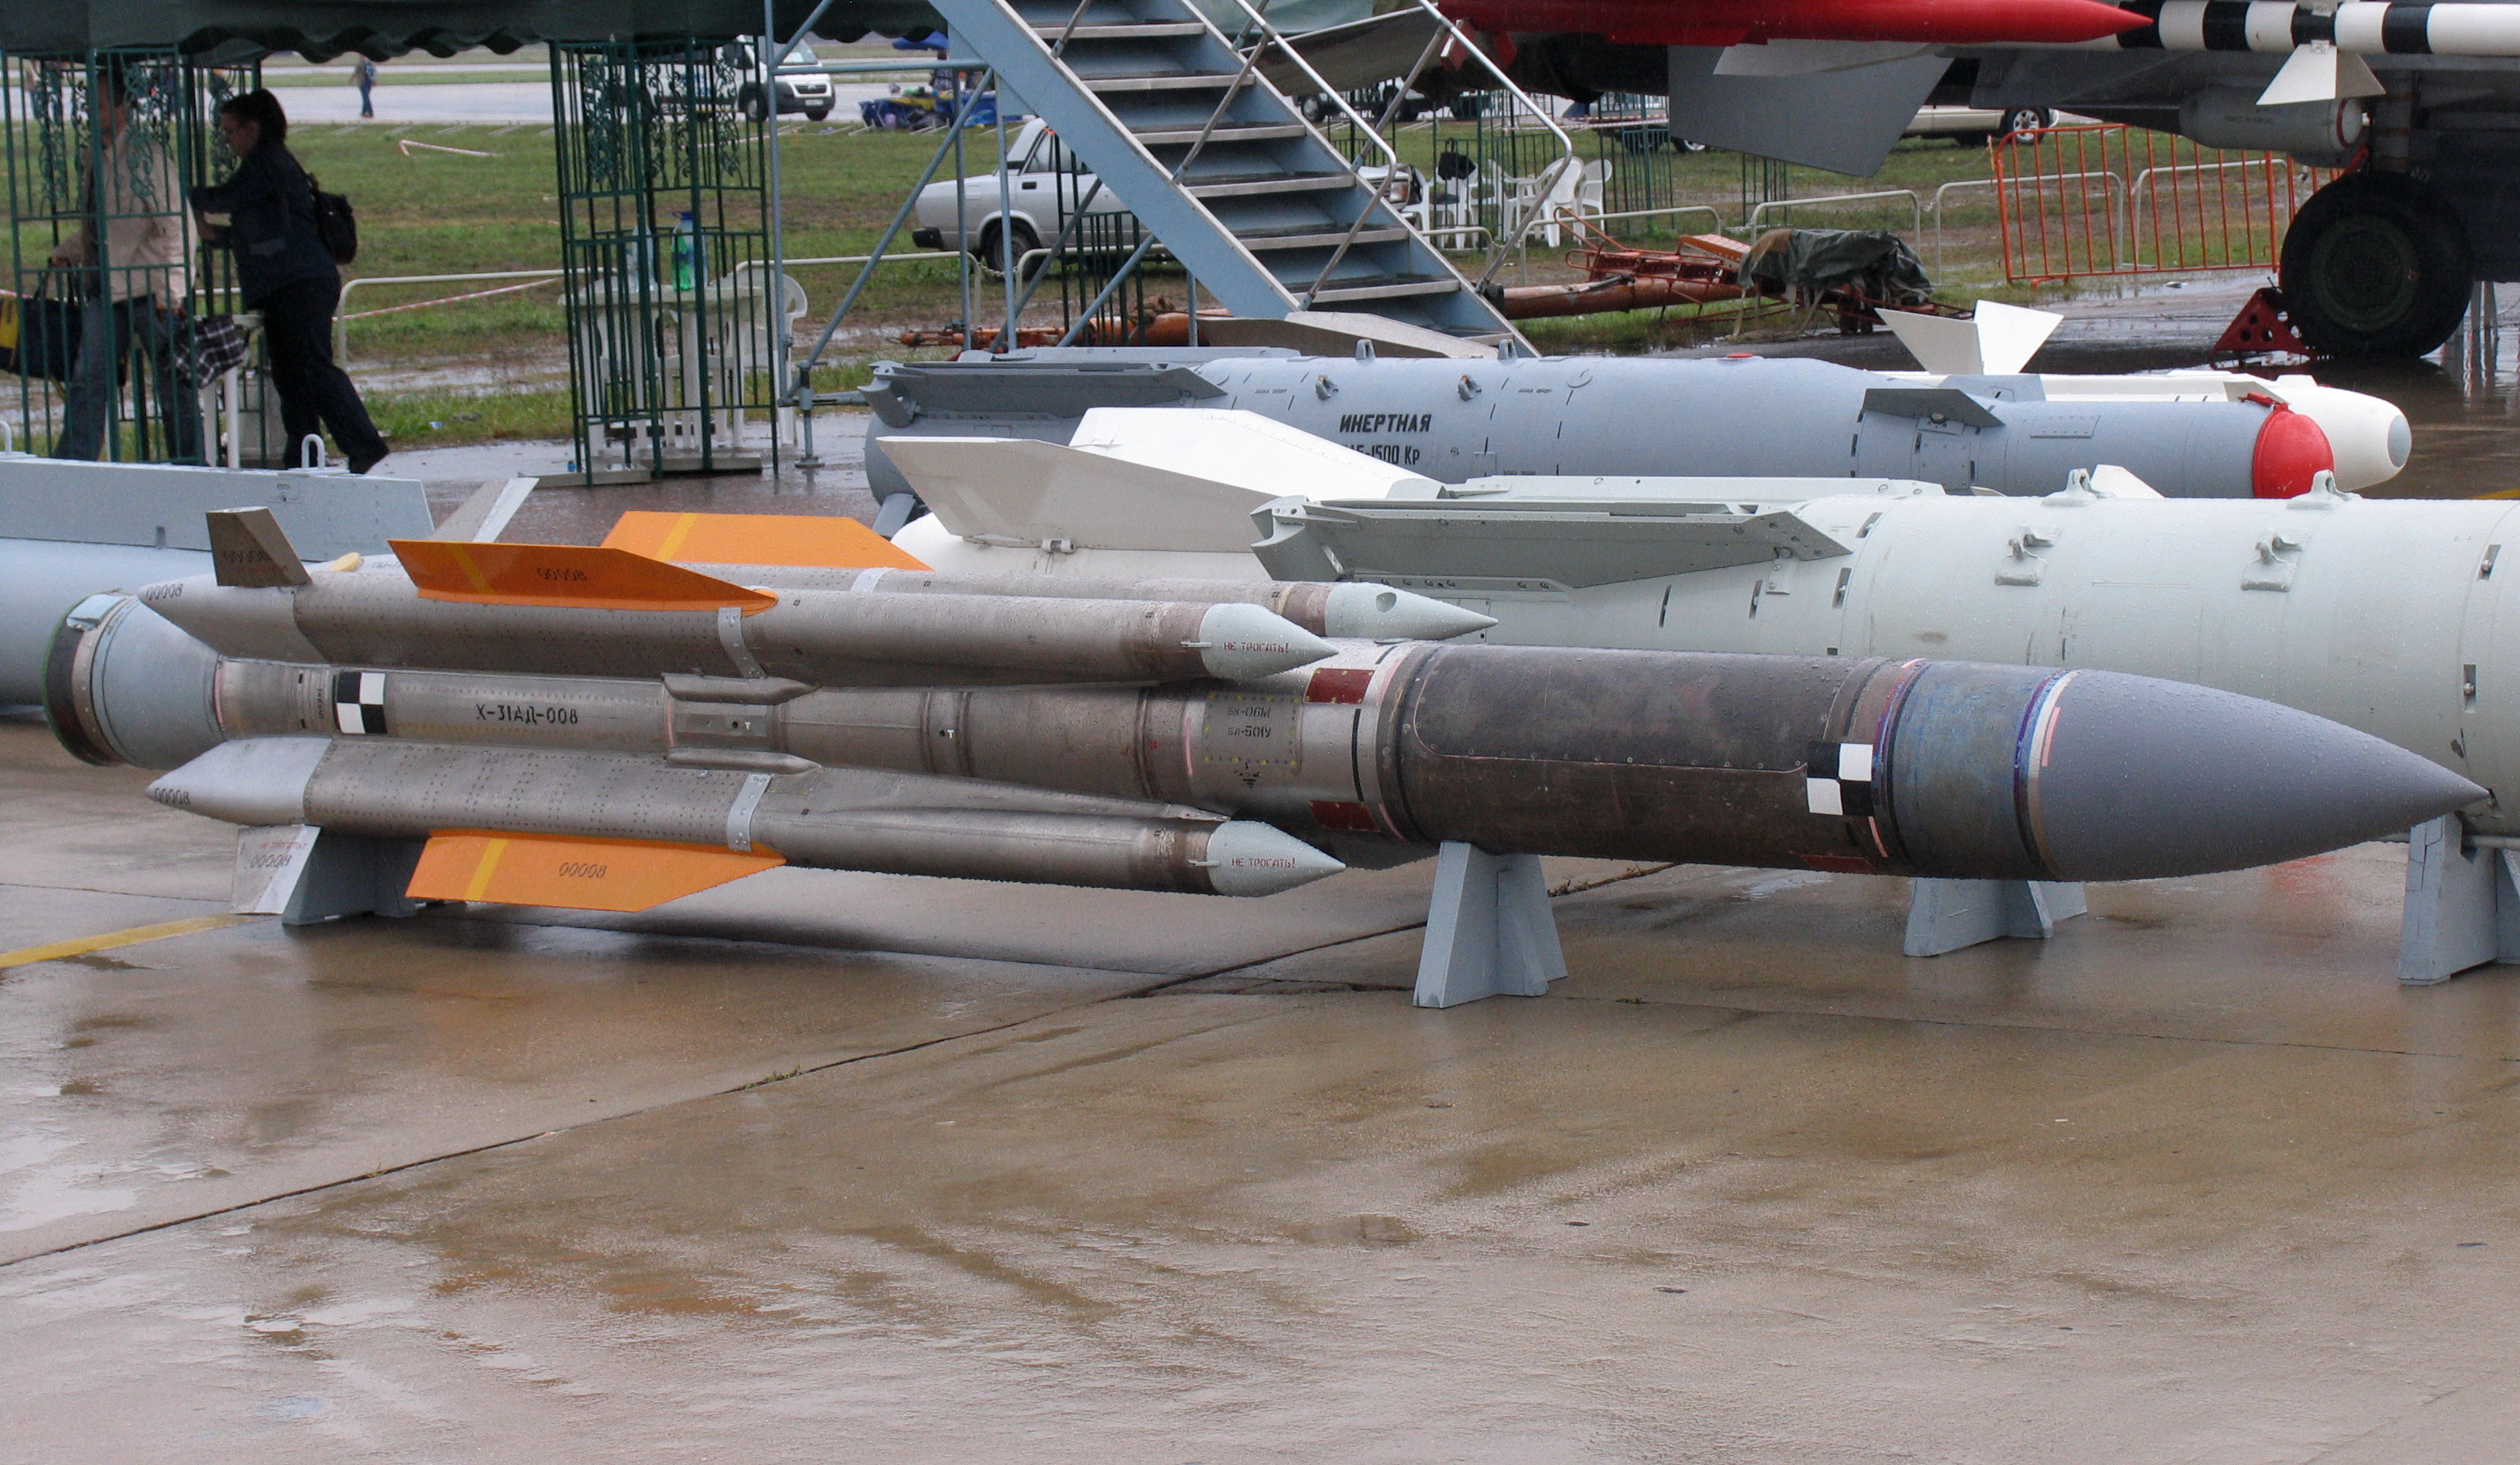 Х 37 б. Х31пм ракета. Х-31 ракета. Авиационная противорадиолокационная ракета х-31пд. Ракета х-31ад противокорабельная.